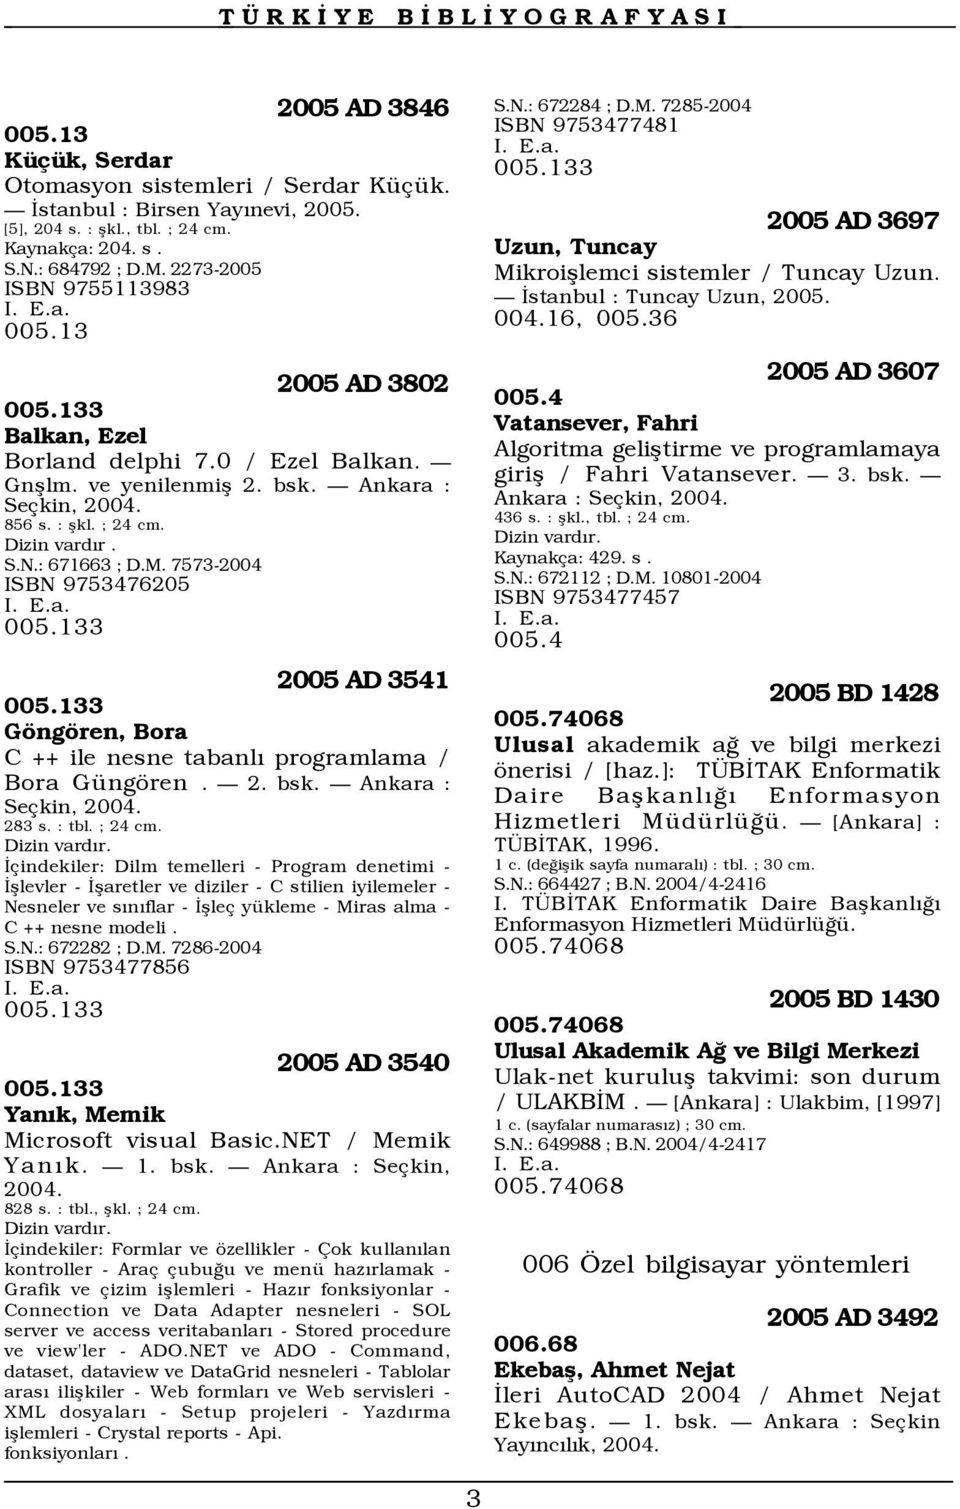 M. 7573-2004 ISBN 9753476205 005.133 2005 AD 3541 005.133 Göngören, Bora C ++ ile nesne tabanlõ programlama / Bora Güngören. 2. bsk. Ankara : Seçkin, 2004. 283 s. : tbl. ; 24 cm. Dizin vardõr.